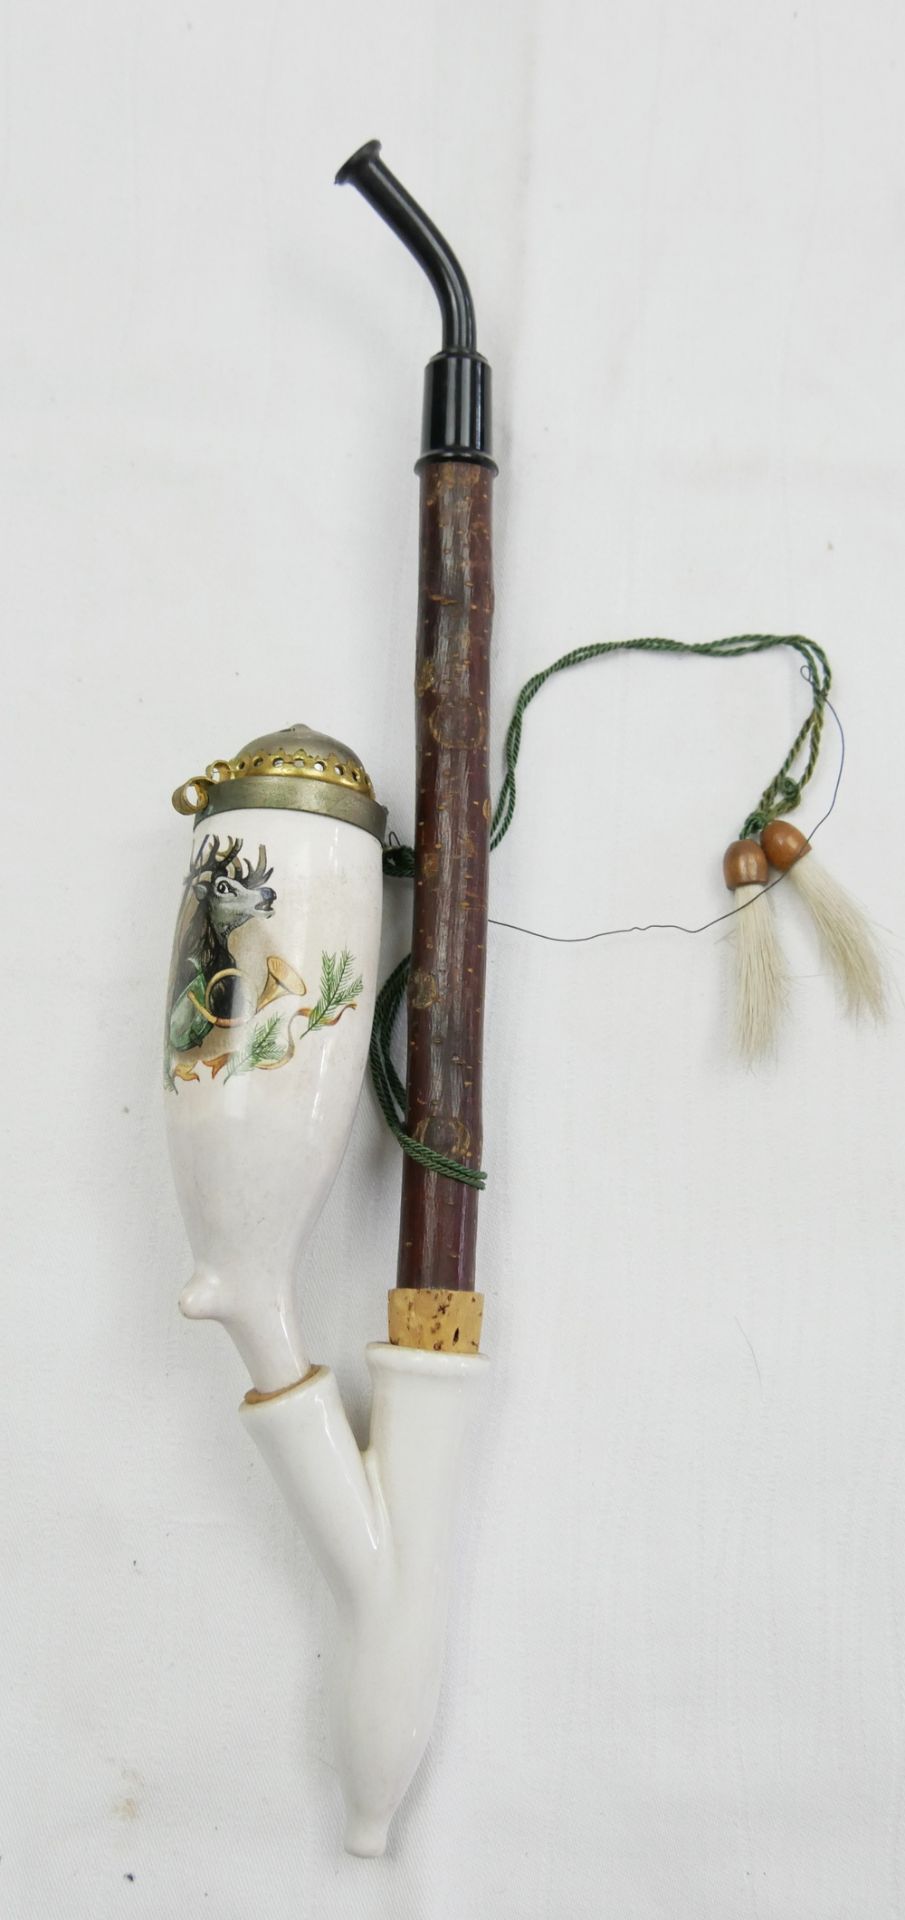 Antike Pfeife mit Porzellankopf, bemalt mit einen Hirsch. Bitte besichtigen